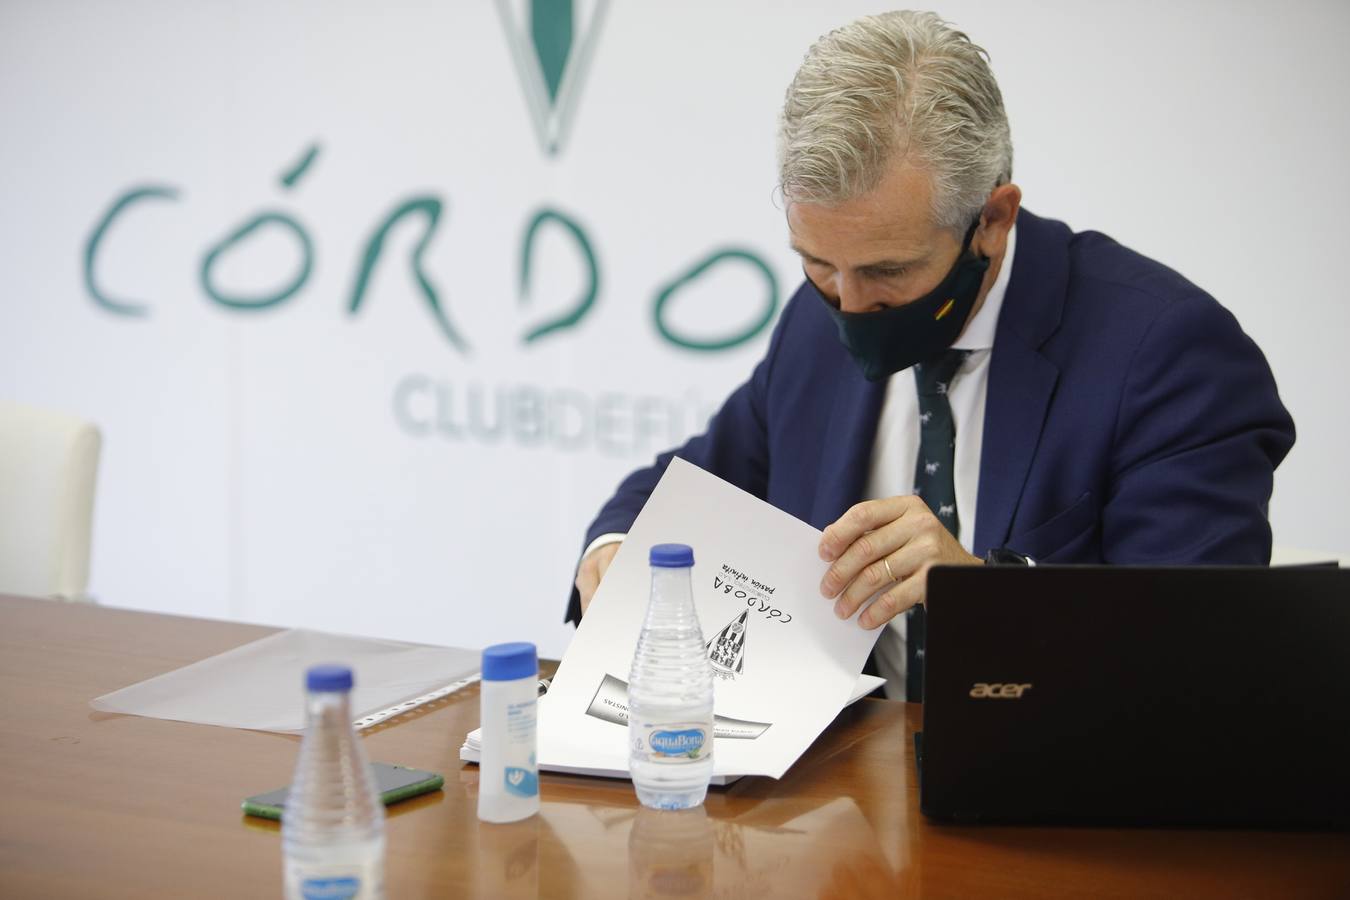 La Junta General de accionistas del Córdoba CF SAD, en imágenes